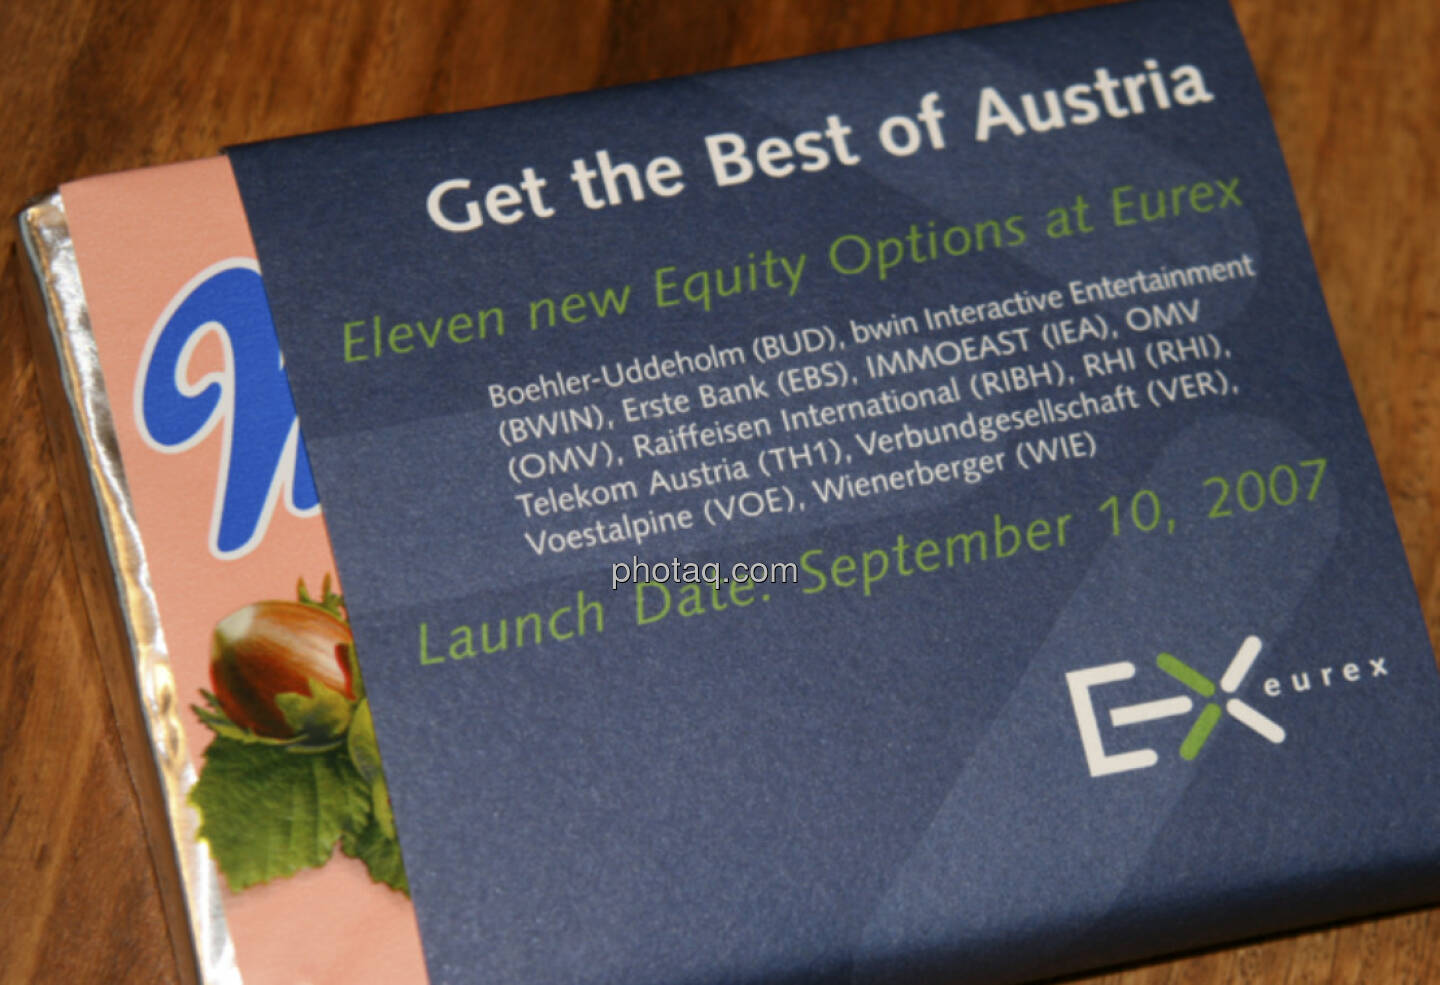 Manner, Get the Best of Austria, Eurex